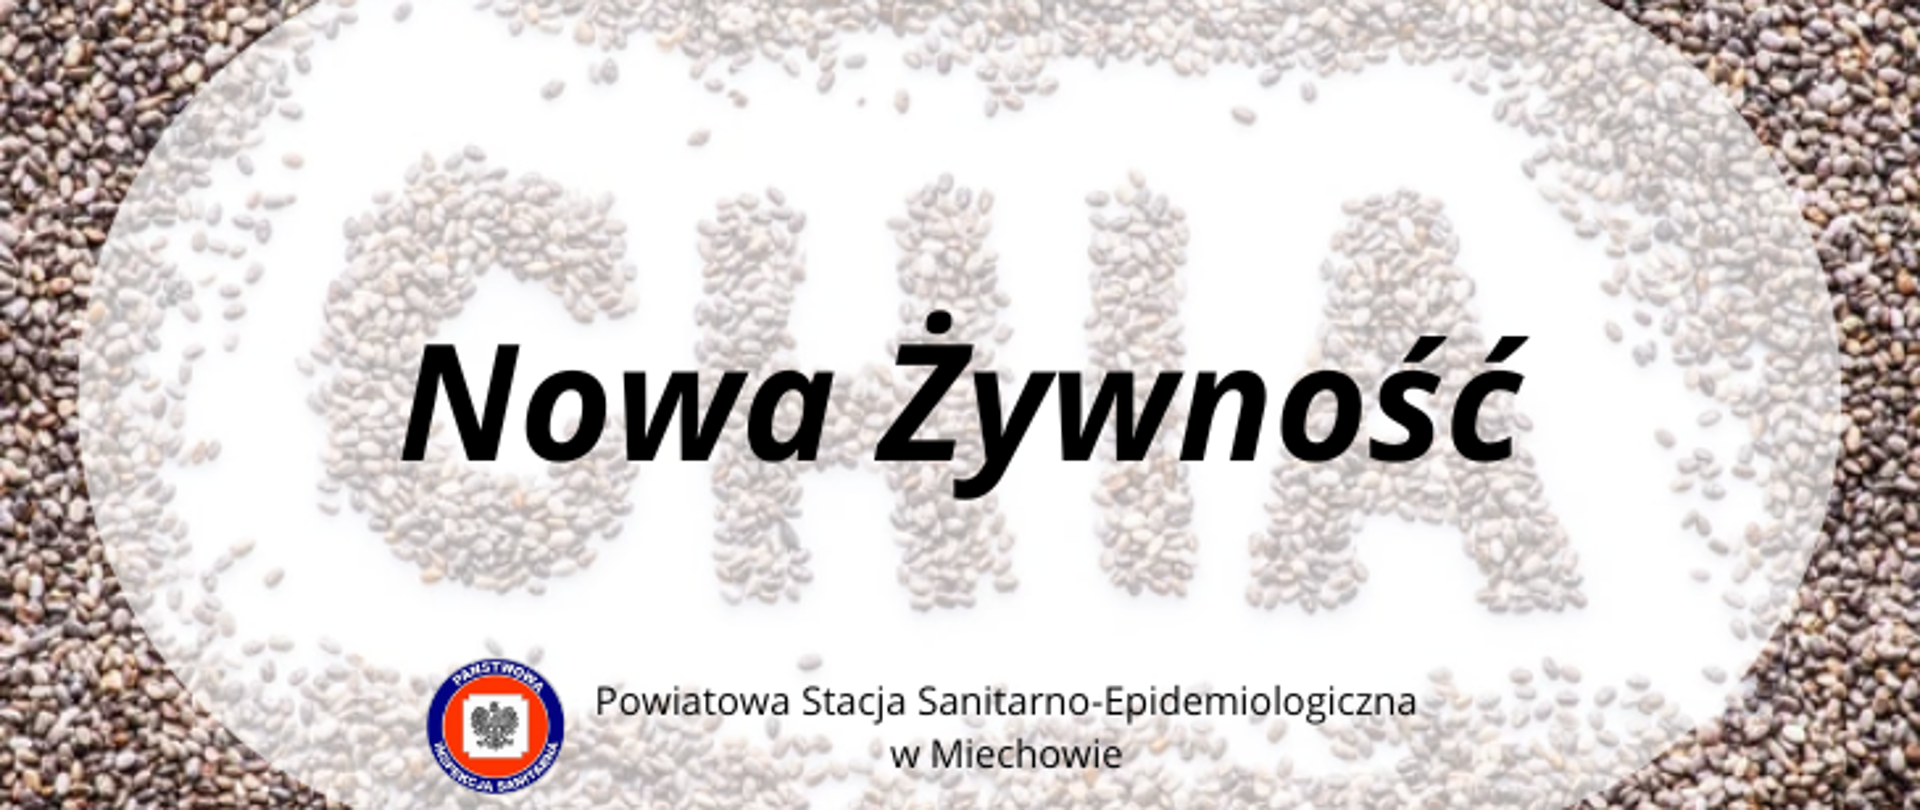 Na tle z napisem CHIA znajduje się białe pole z napisem Nowa Żywność. W dolnej części białego pola znajduje się logo Państwowej Inspekcji Sanitarnej oraz napis Powiatowa Stacja Sanitarno-Epidemiologiczna w Miechowie.